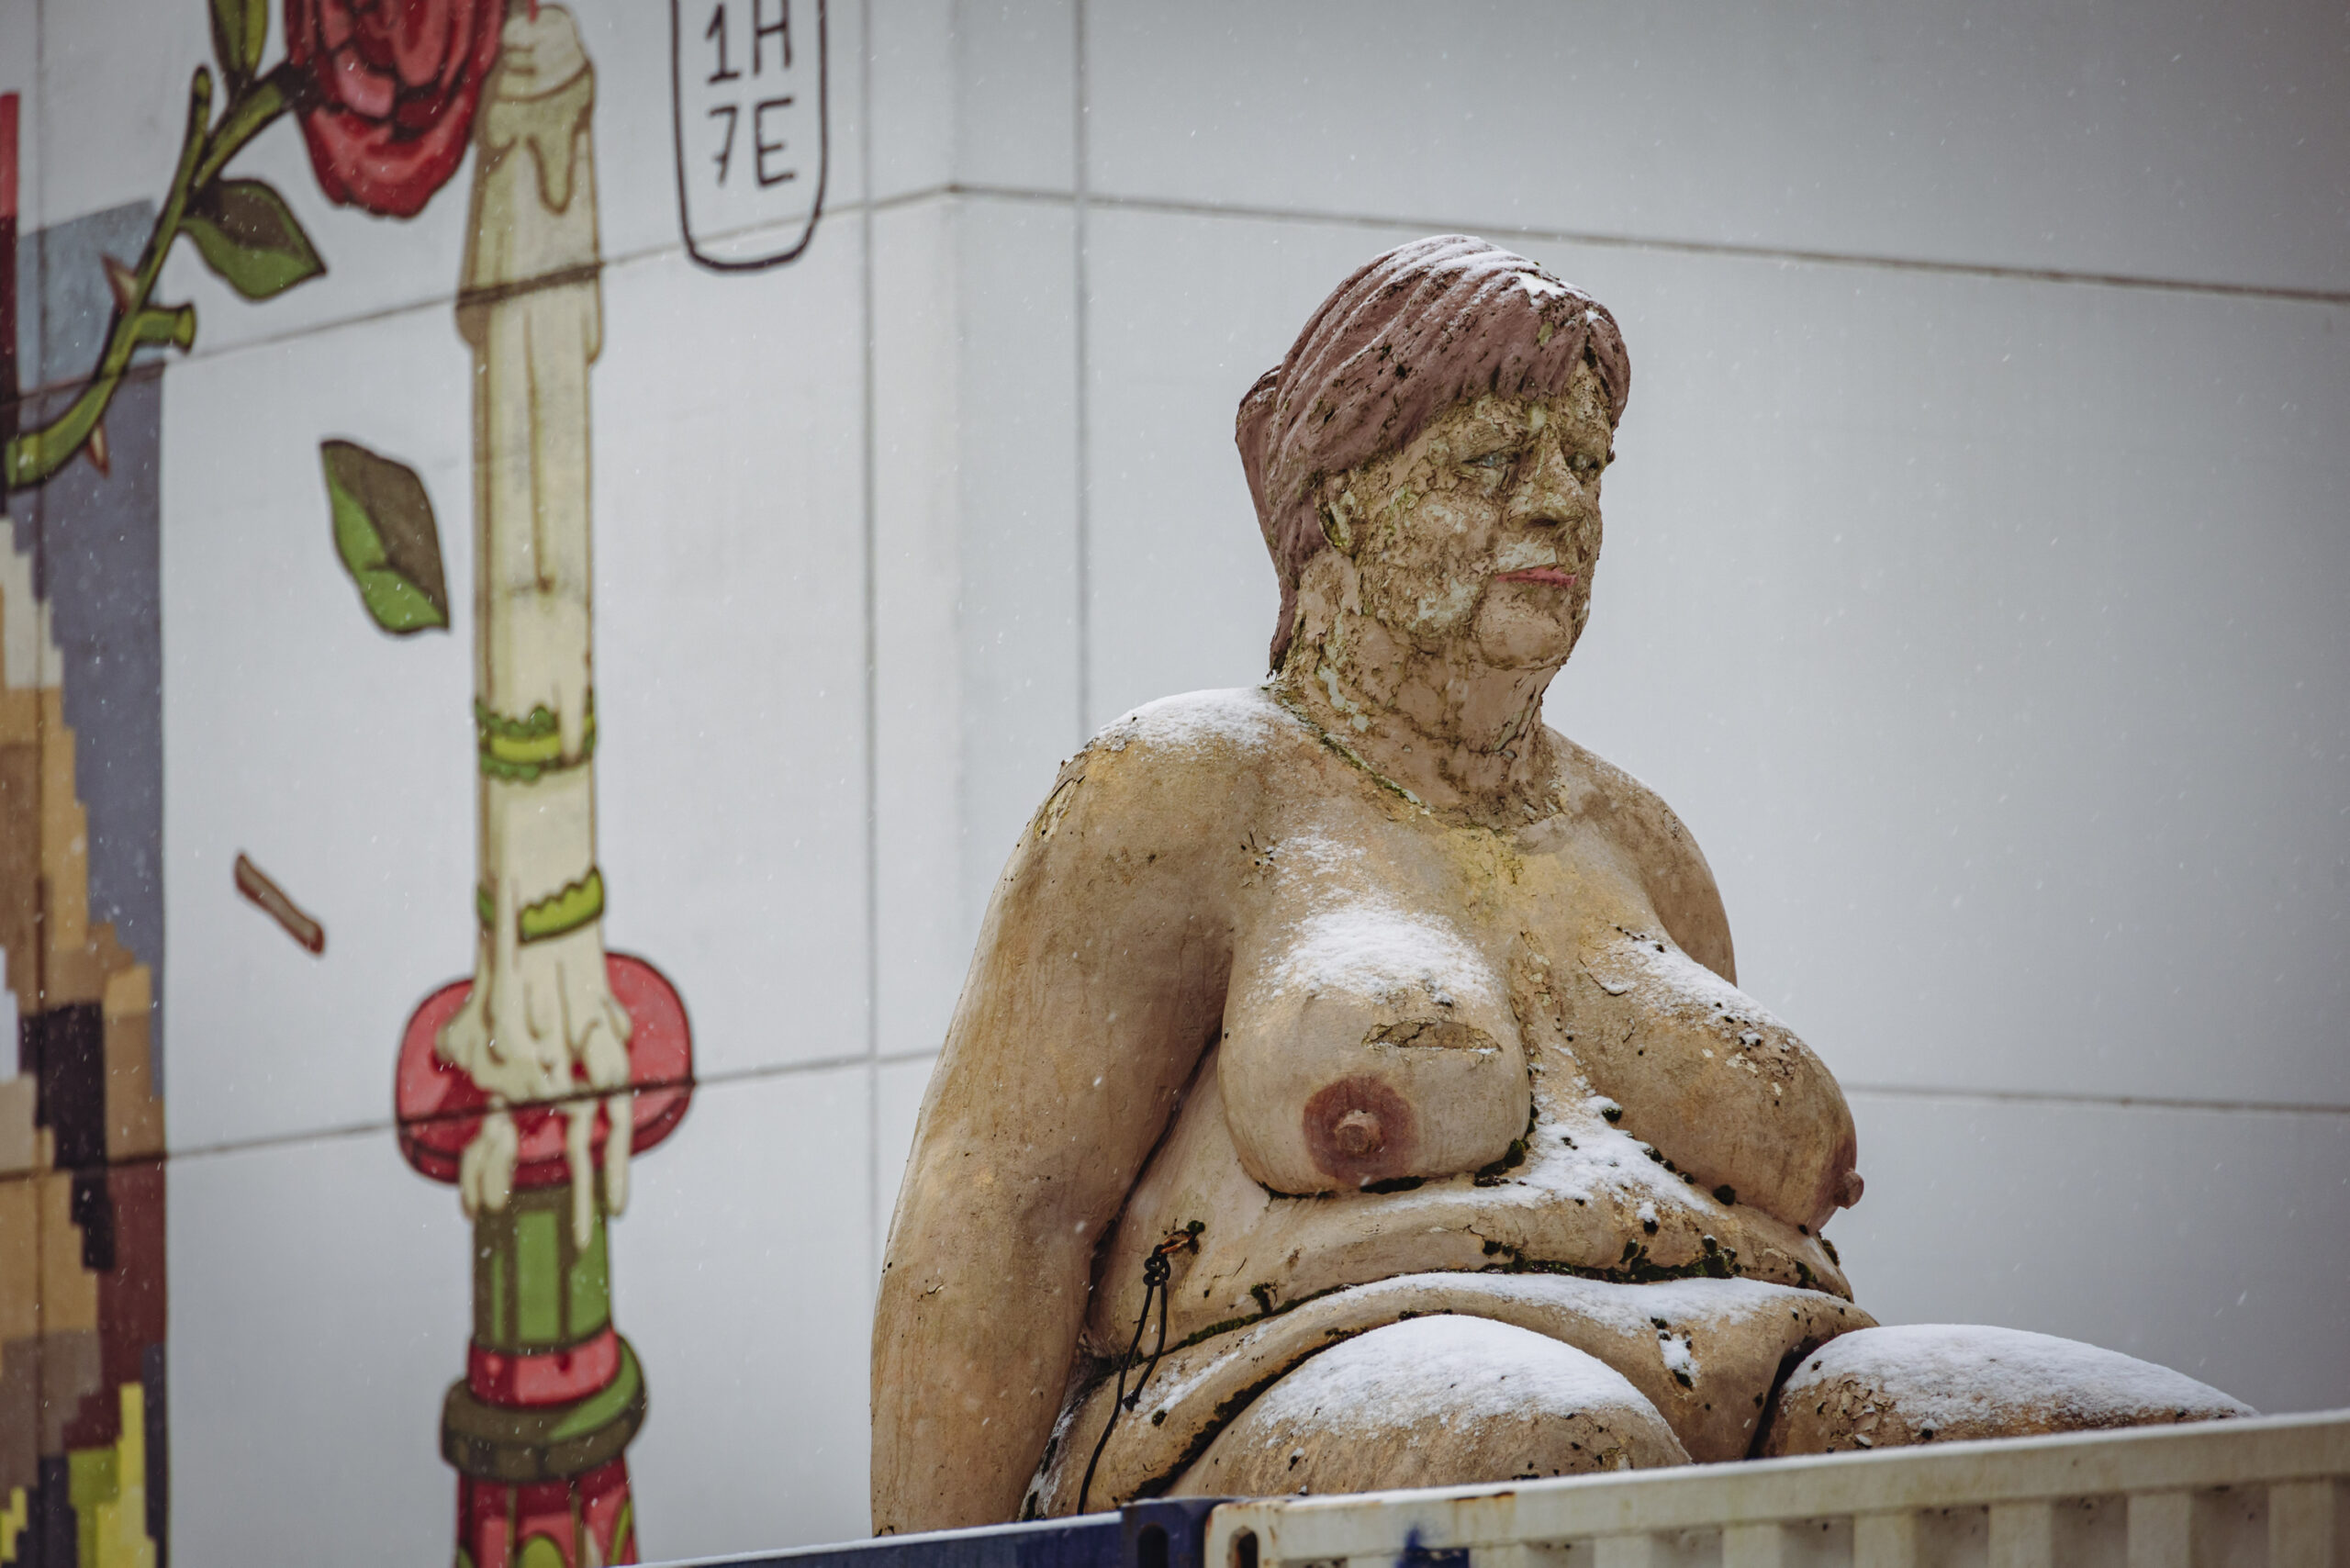 Eine sitzende, nackte Frau mit hängenden Brüsten, Schwabbelbauch und einem Gesicht, das stark an Angela Merkel erinnert